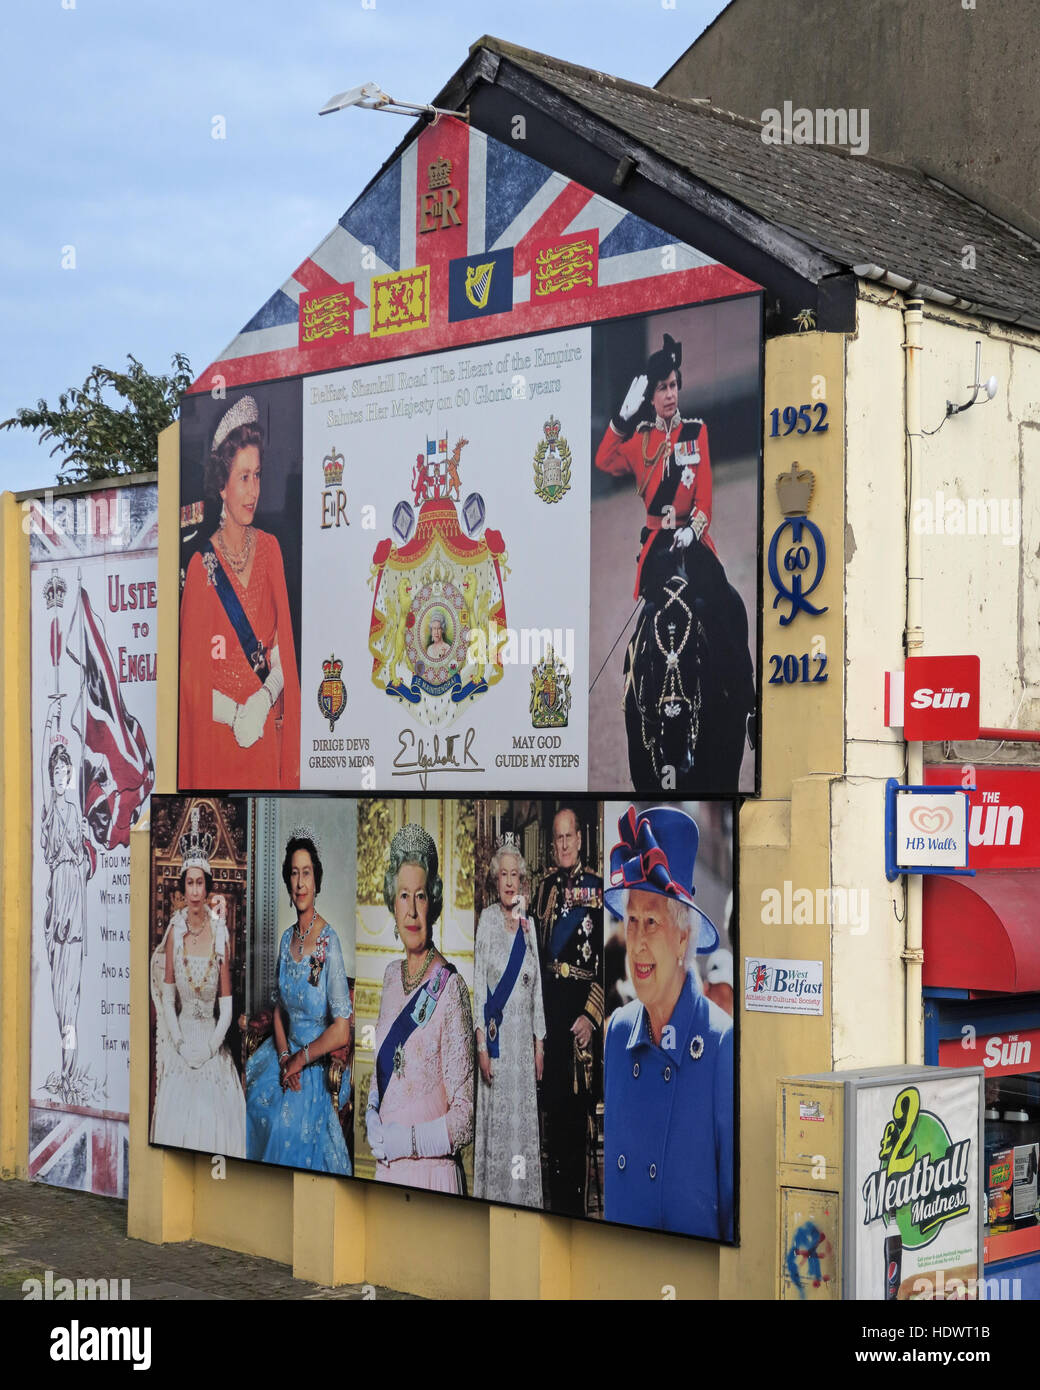 60 ans de la reine Elizabeth II Shankill Road West Belfast, Irlande du Nord, Royaume-Uni Banque D'Images